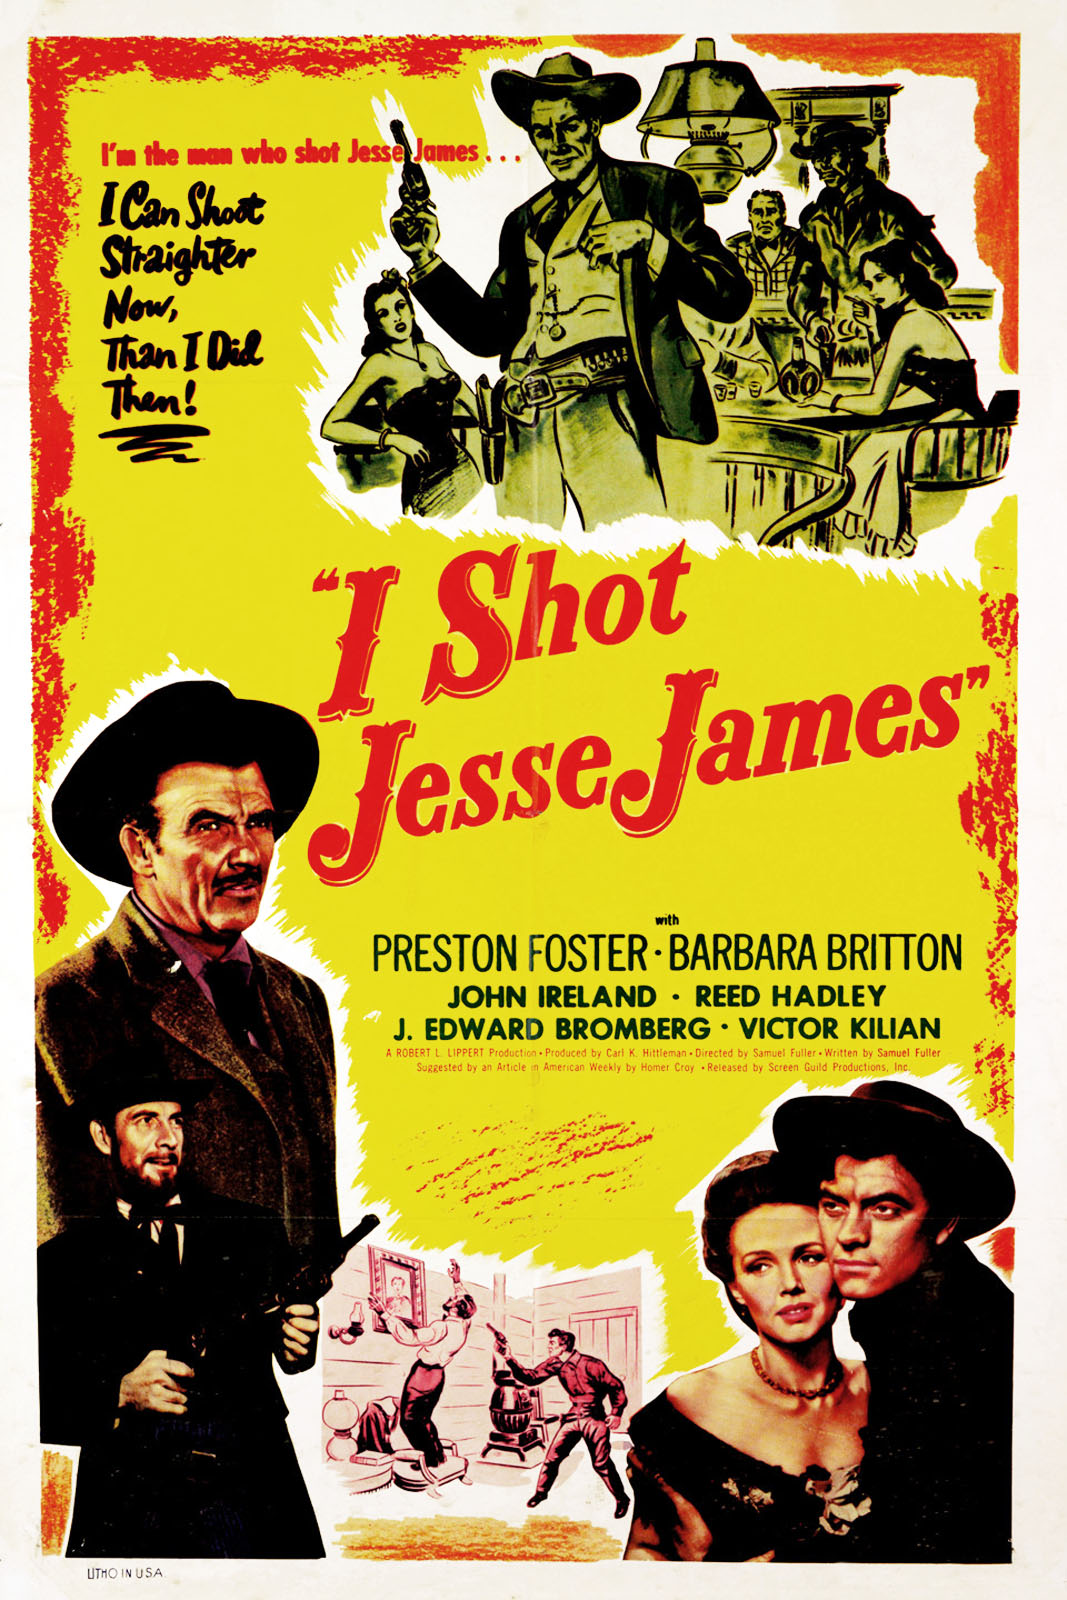 I SHOT JESSE JAMES